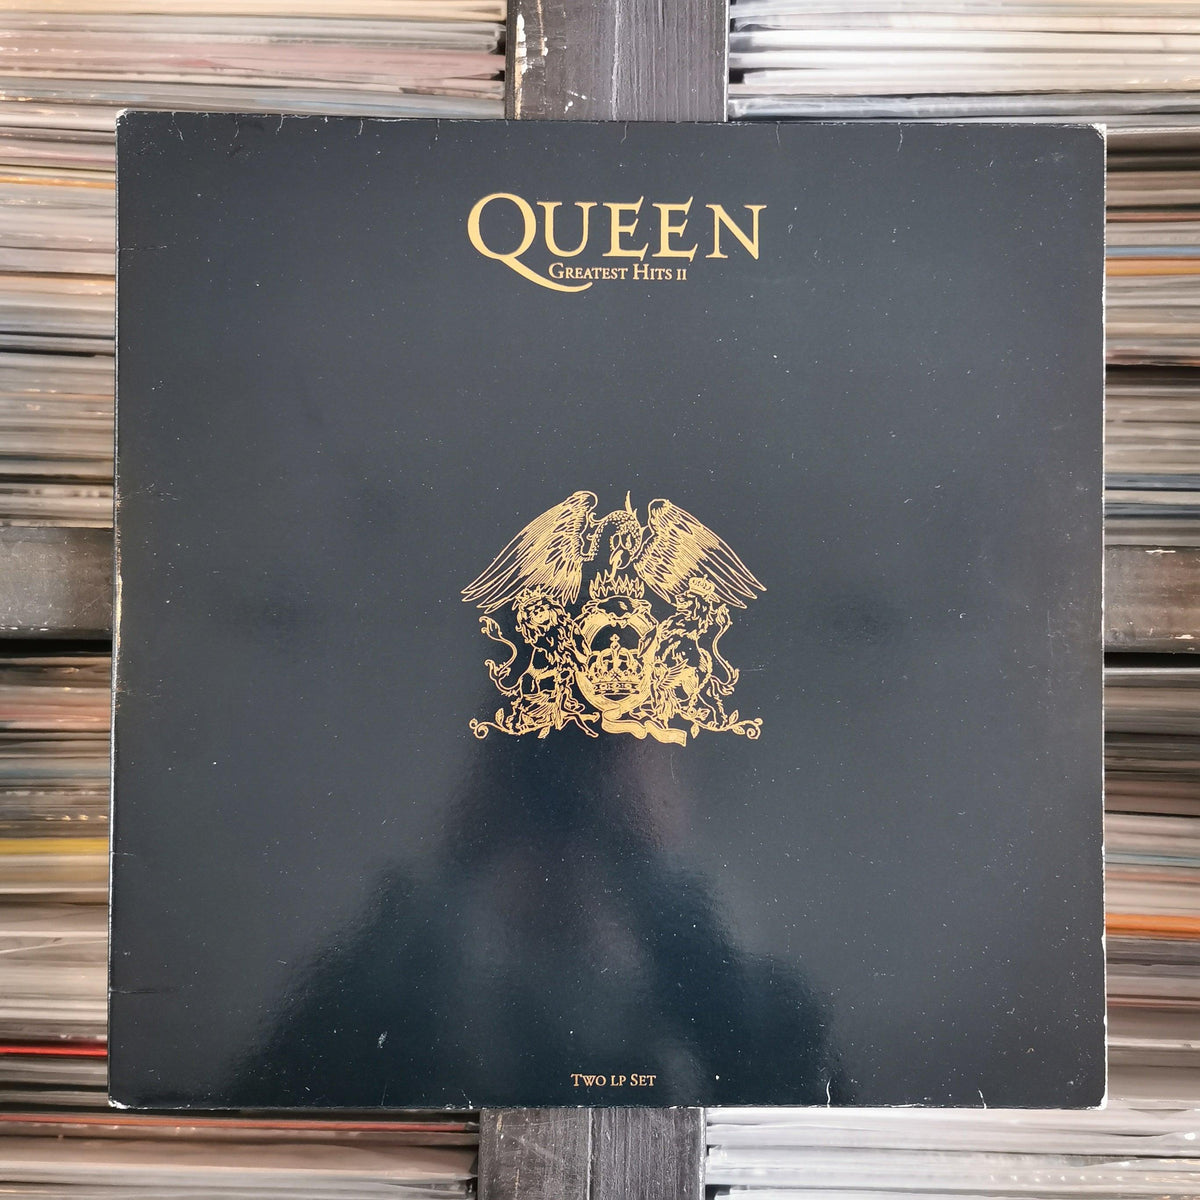 Queen - Greatest Hits II - 2 x Vinyl LP — Released Records